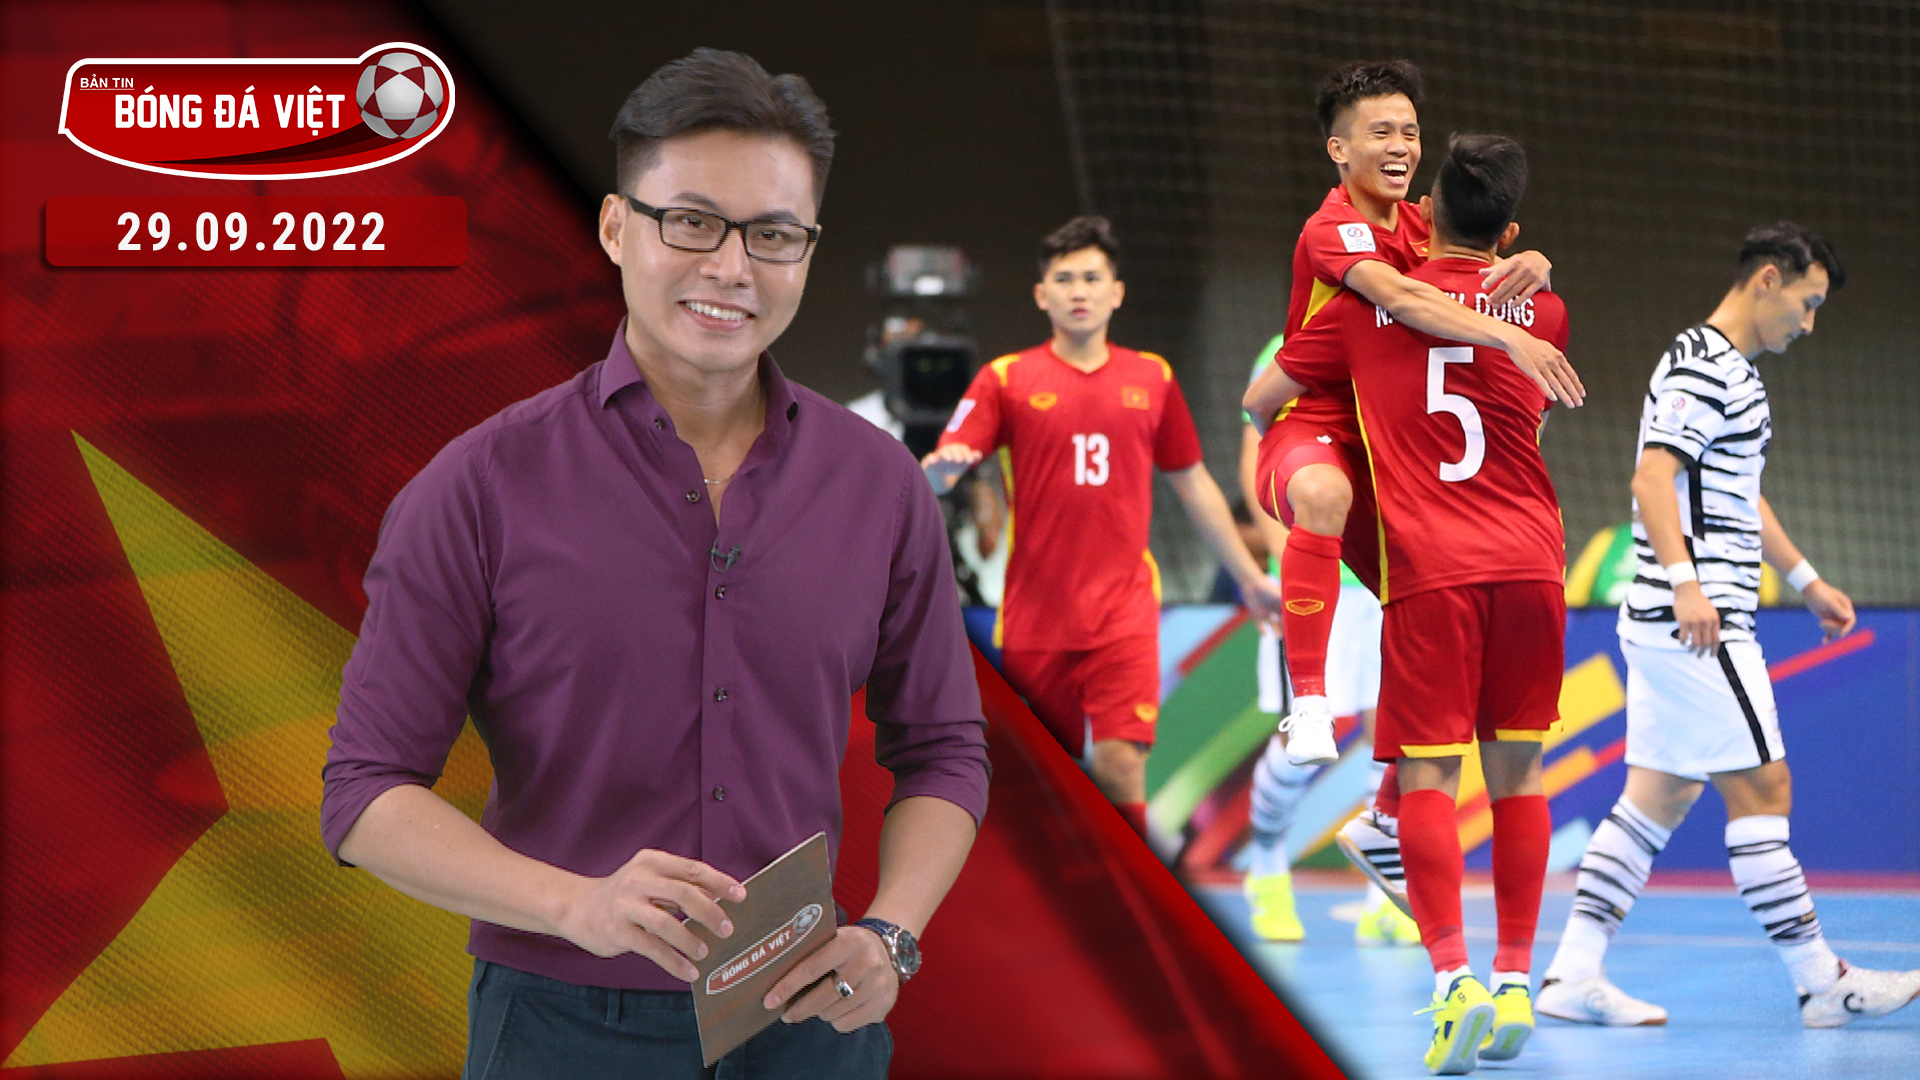 Đội tuyển Futsal Việt Nam ra quân thành công tại AFC Futsal Asian Cup - Bản tin bóng đá Việt 29/09